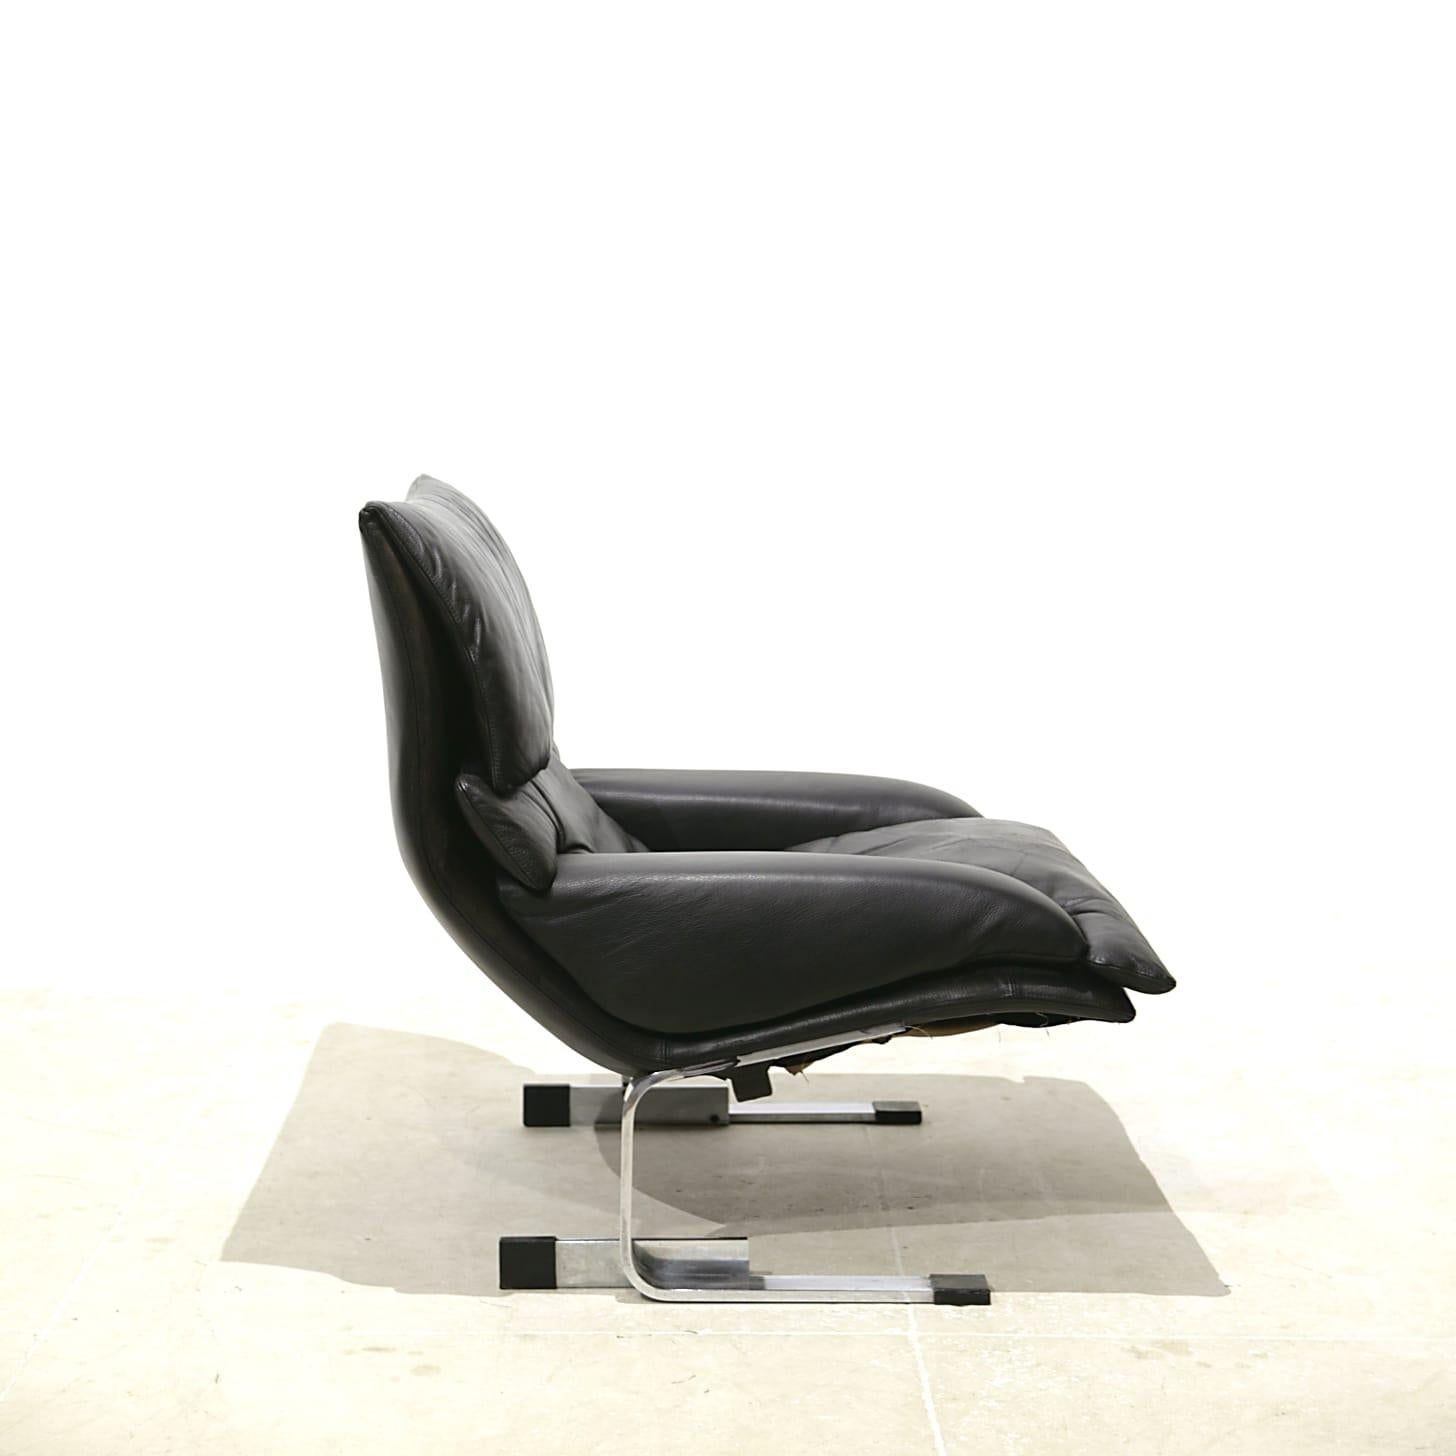 Très élégante paire de fauteuils du designer Giovanni Offredi éditée par Condit Italia, version cuir noir, accompagnée d'un bel ottoman en très bon état d'origine.

Plus de photos et de détails sont disponibles sur demande

APROX. DIMENSIONS
Largeur